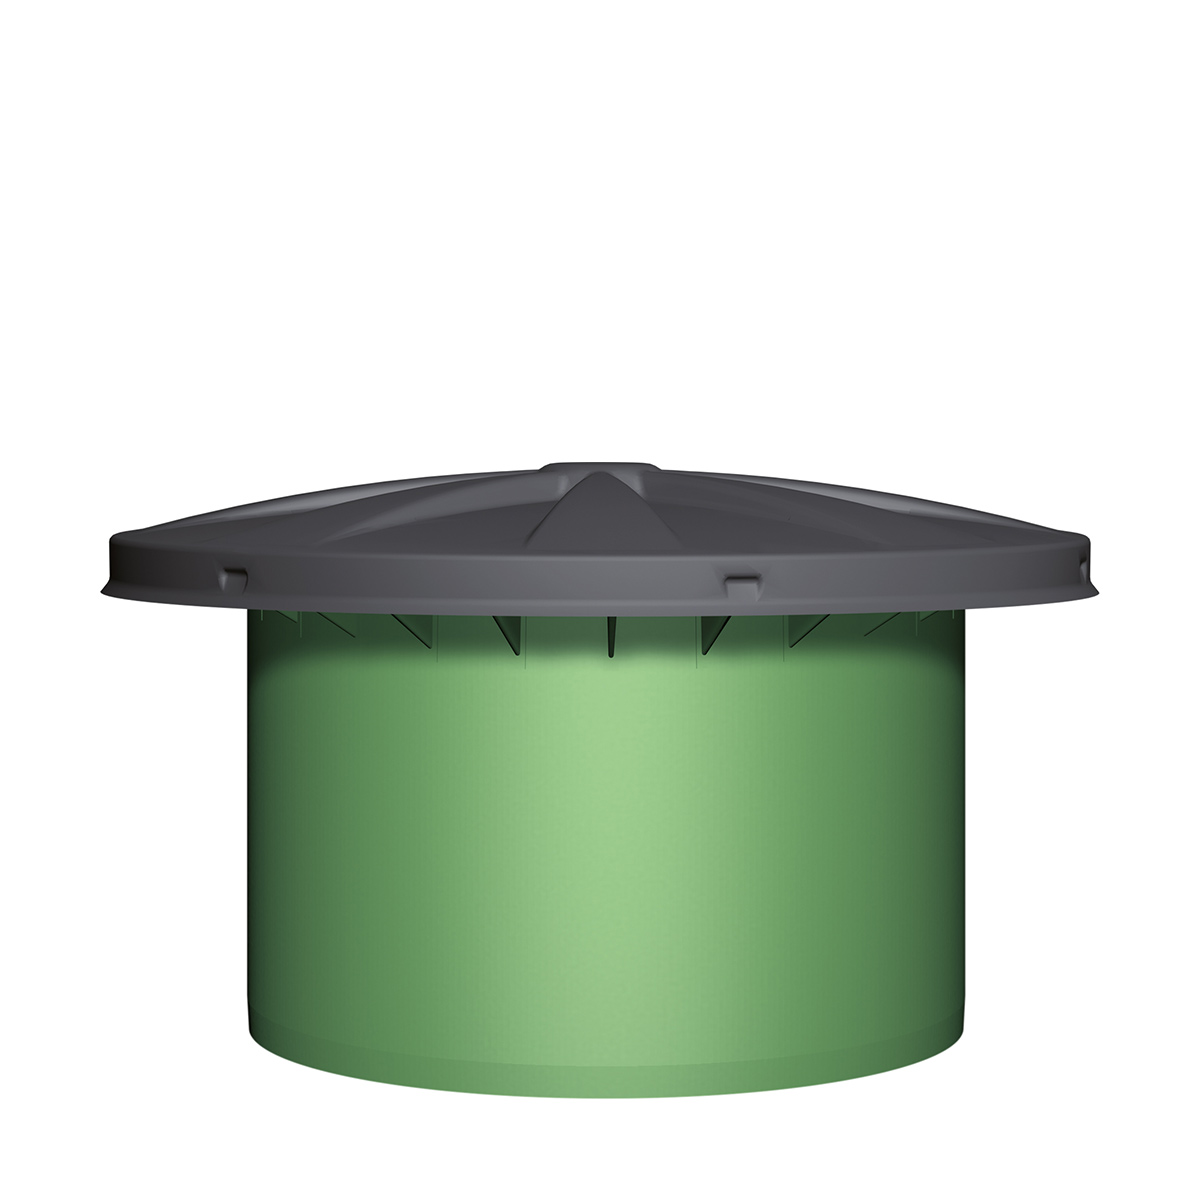 Regard de dôme télescopique Maxi, adapté à l'eau potable, vert/noir